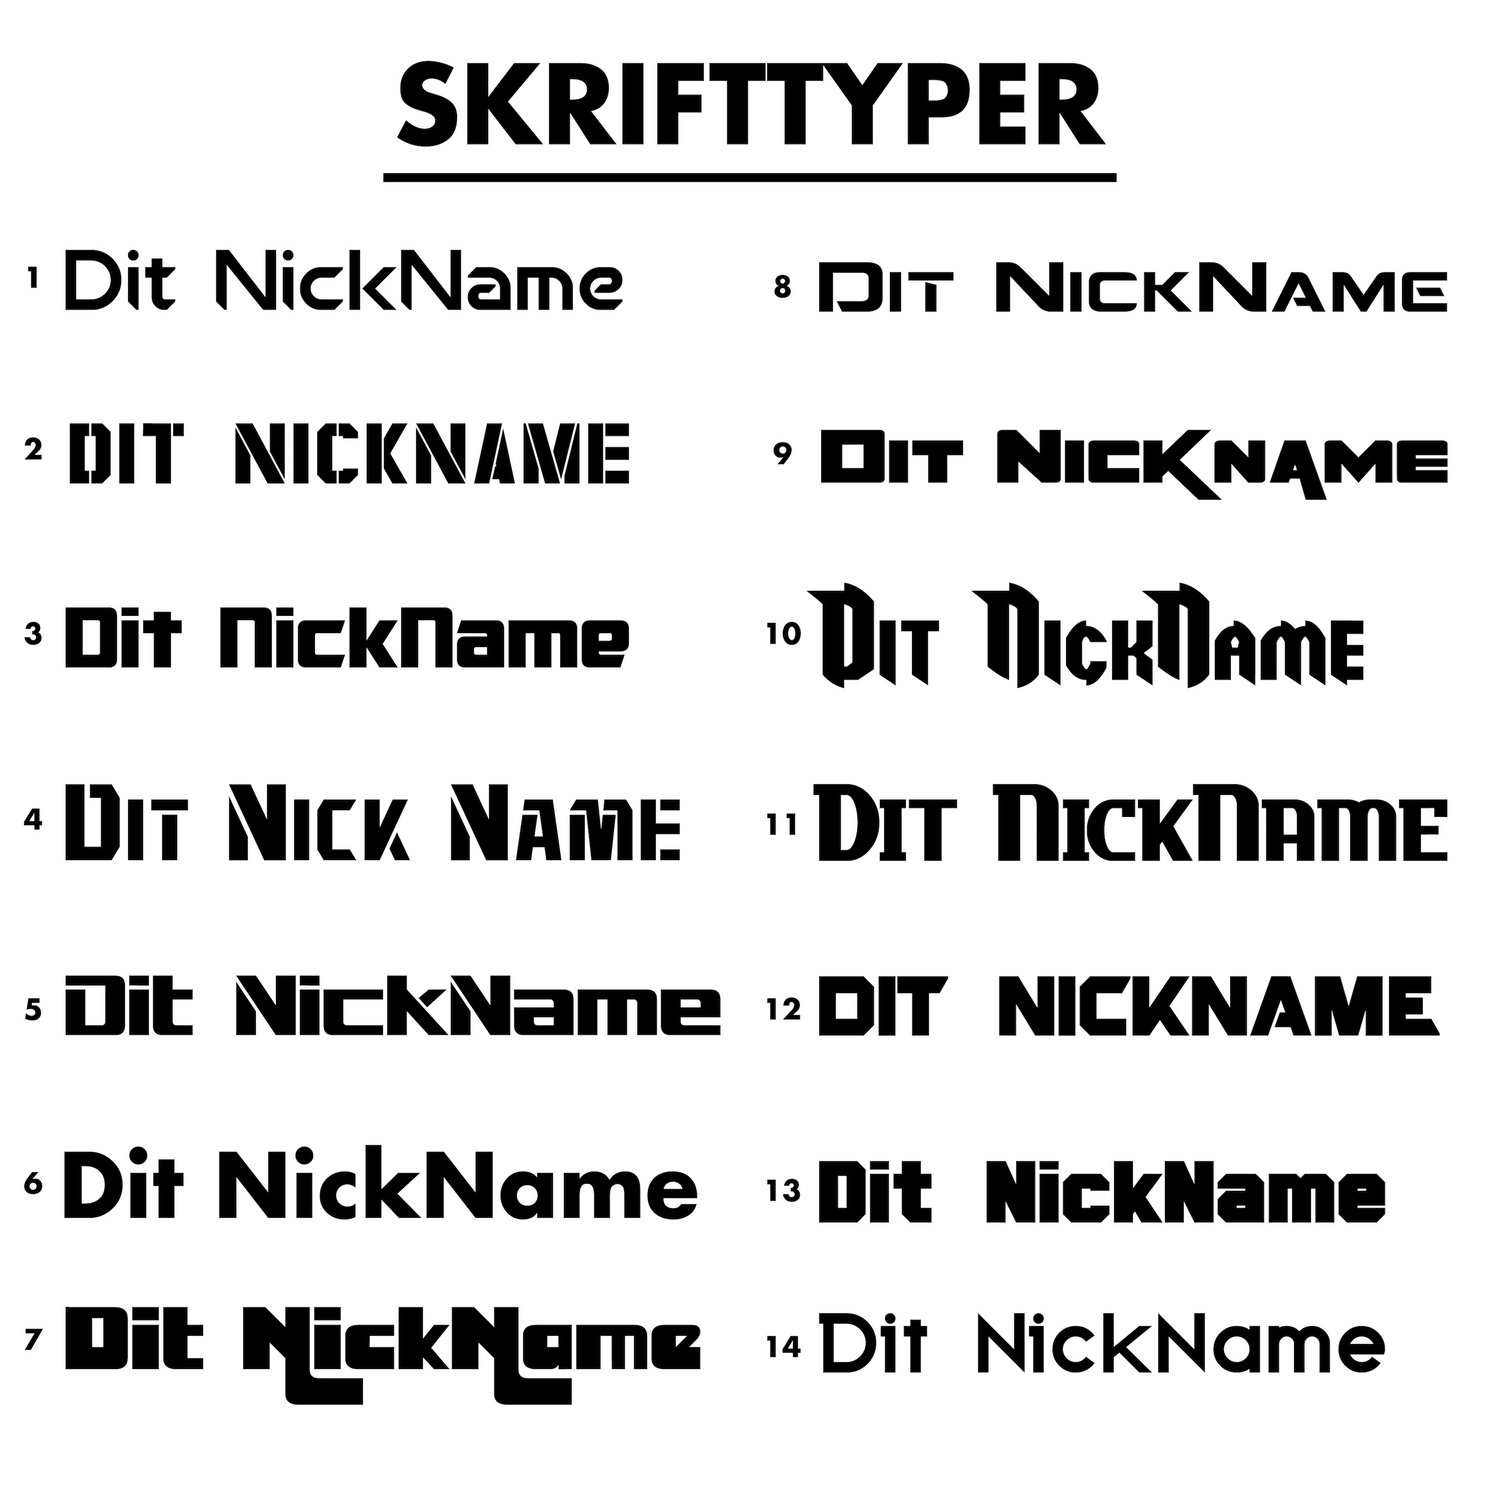 Nickname - make it stick